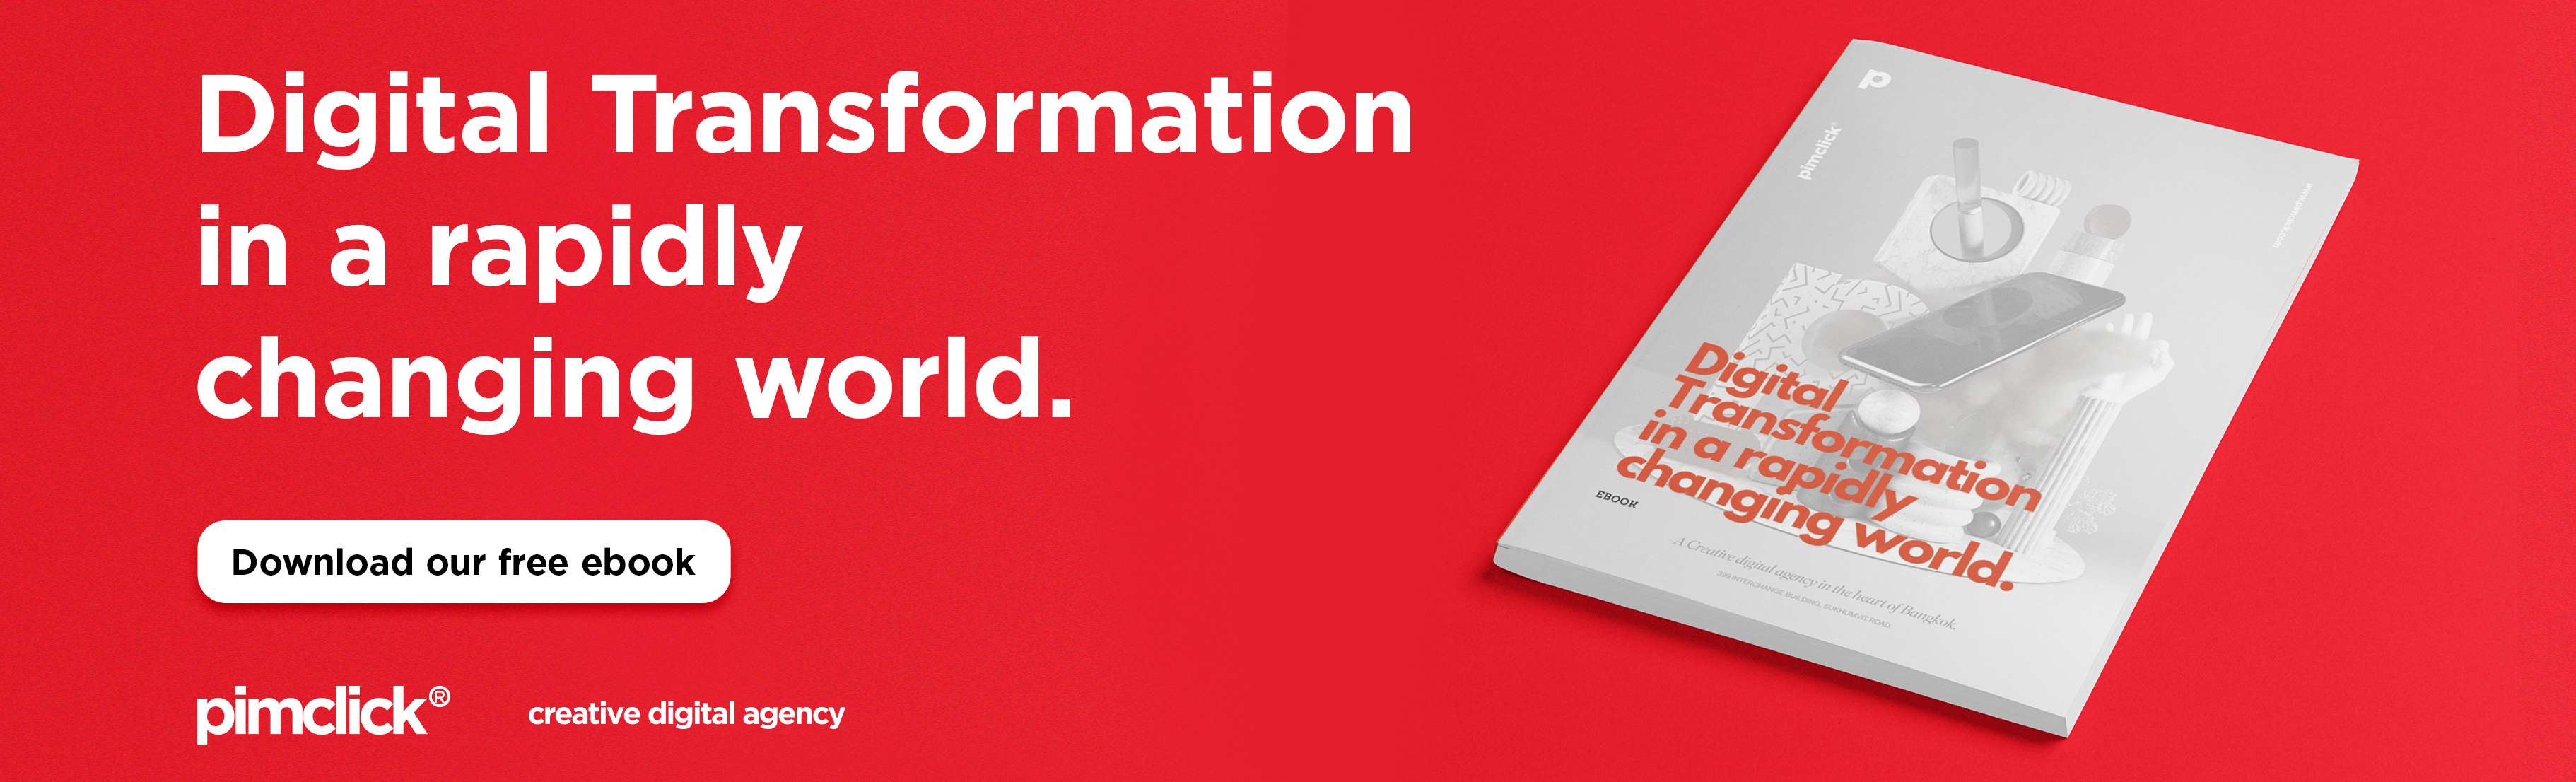 ดาวน์โหลดได้แล้ววันนี้! Digital Transformation in a Rapidly Changing World, หนังสืออีบุ๊คเล่มล่าสุดจากพิมพ์คลิก